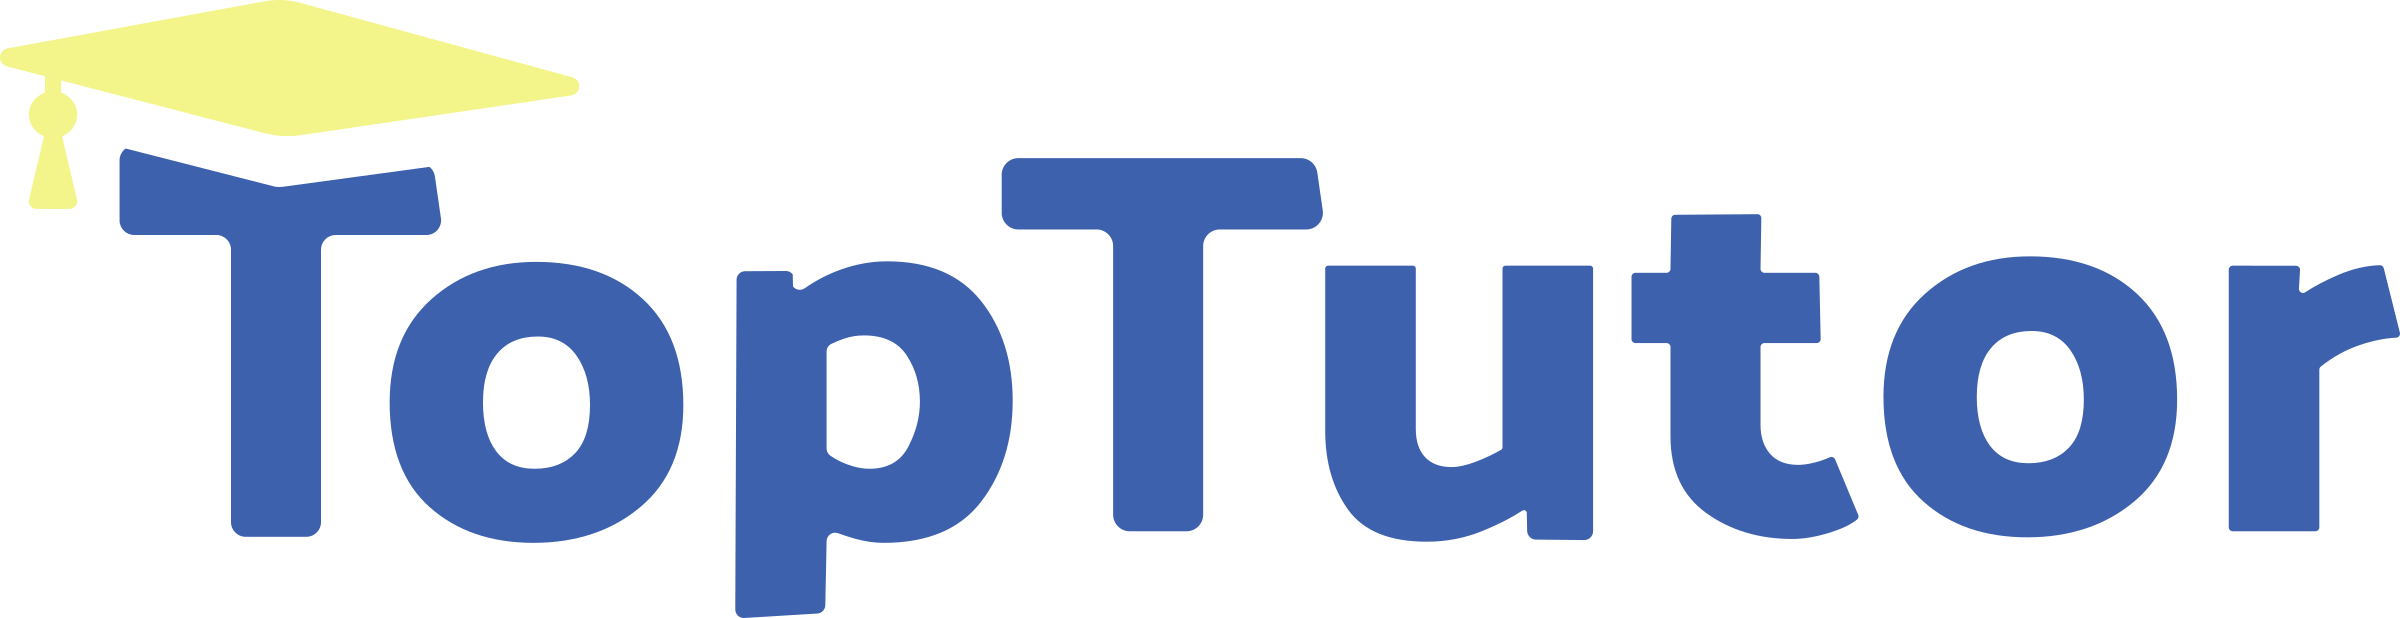 toptutor_logo